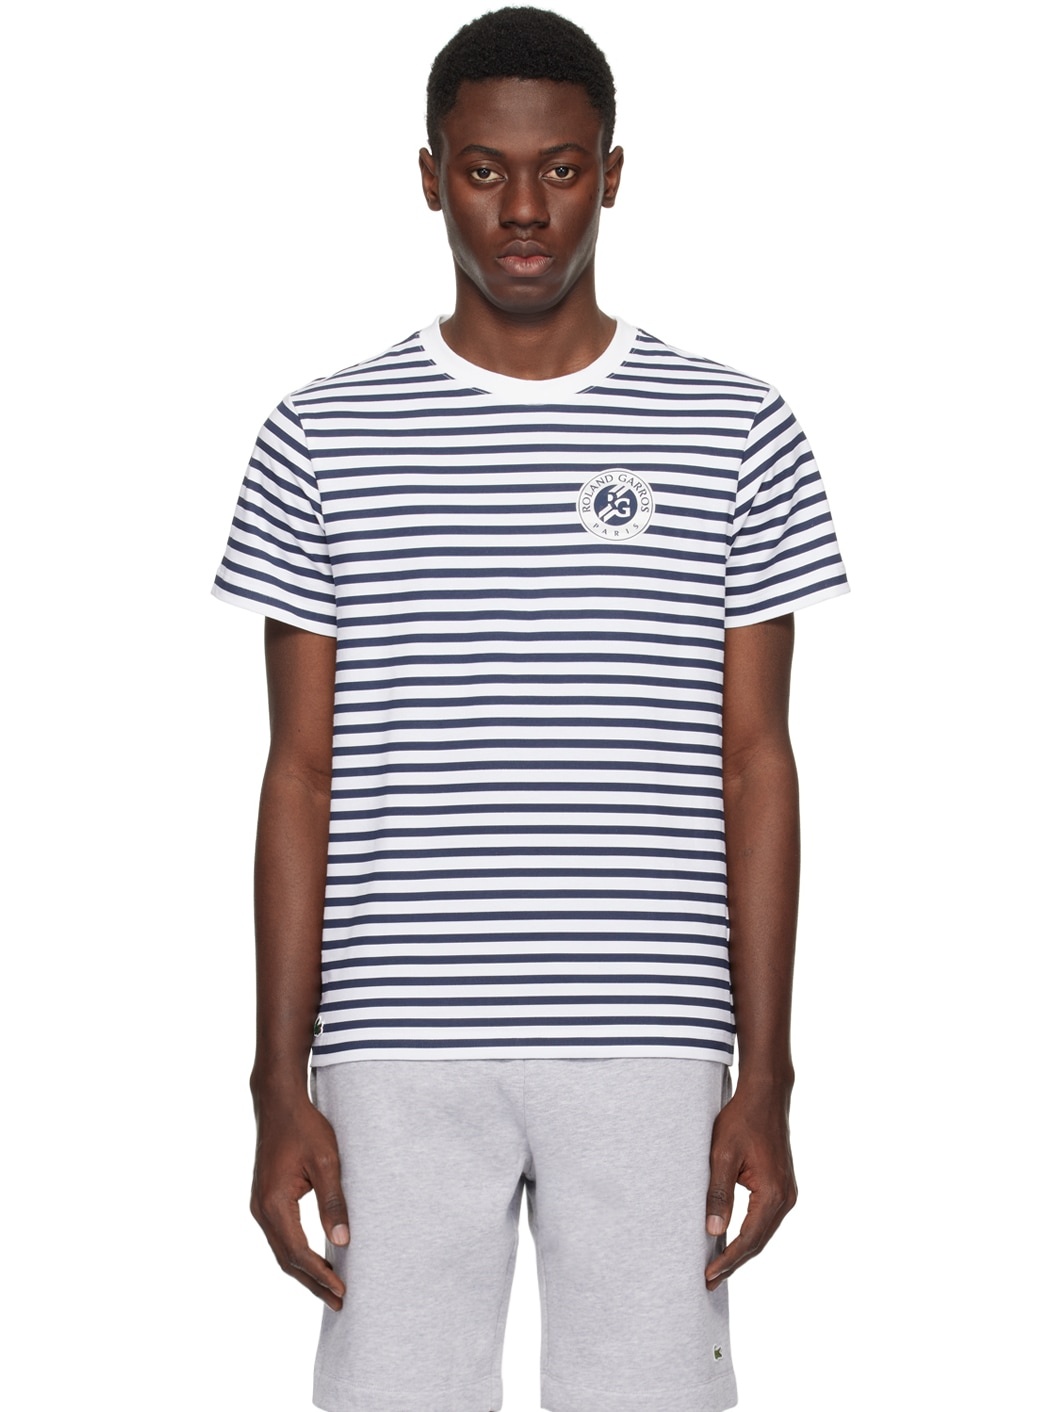 White & Navy Roland Garros Edition T-Shirt - 1